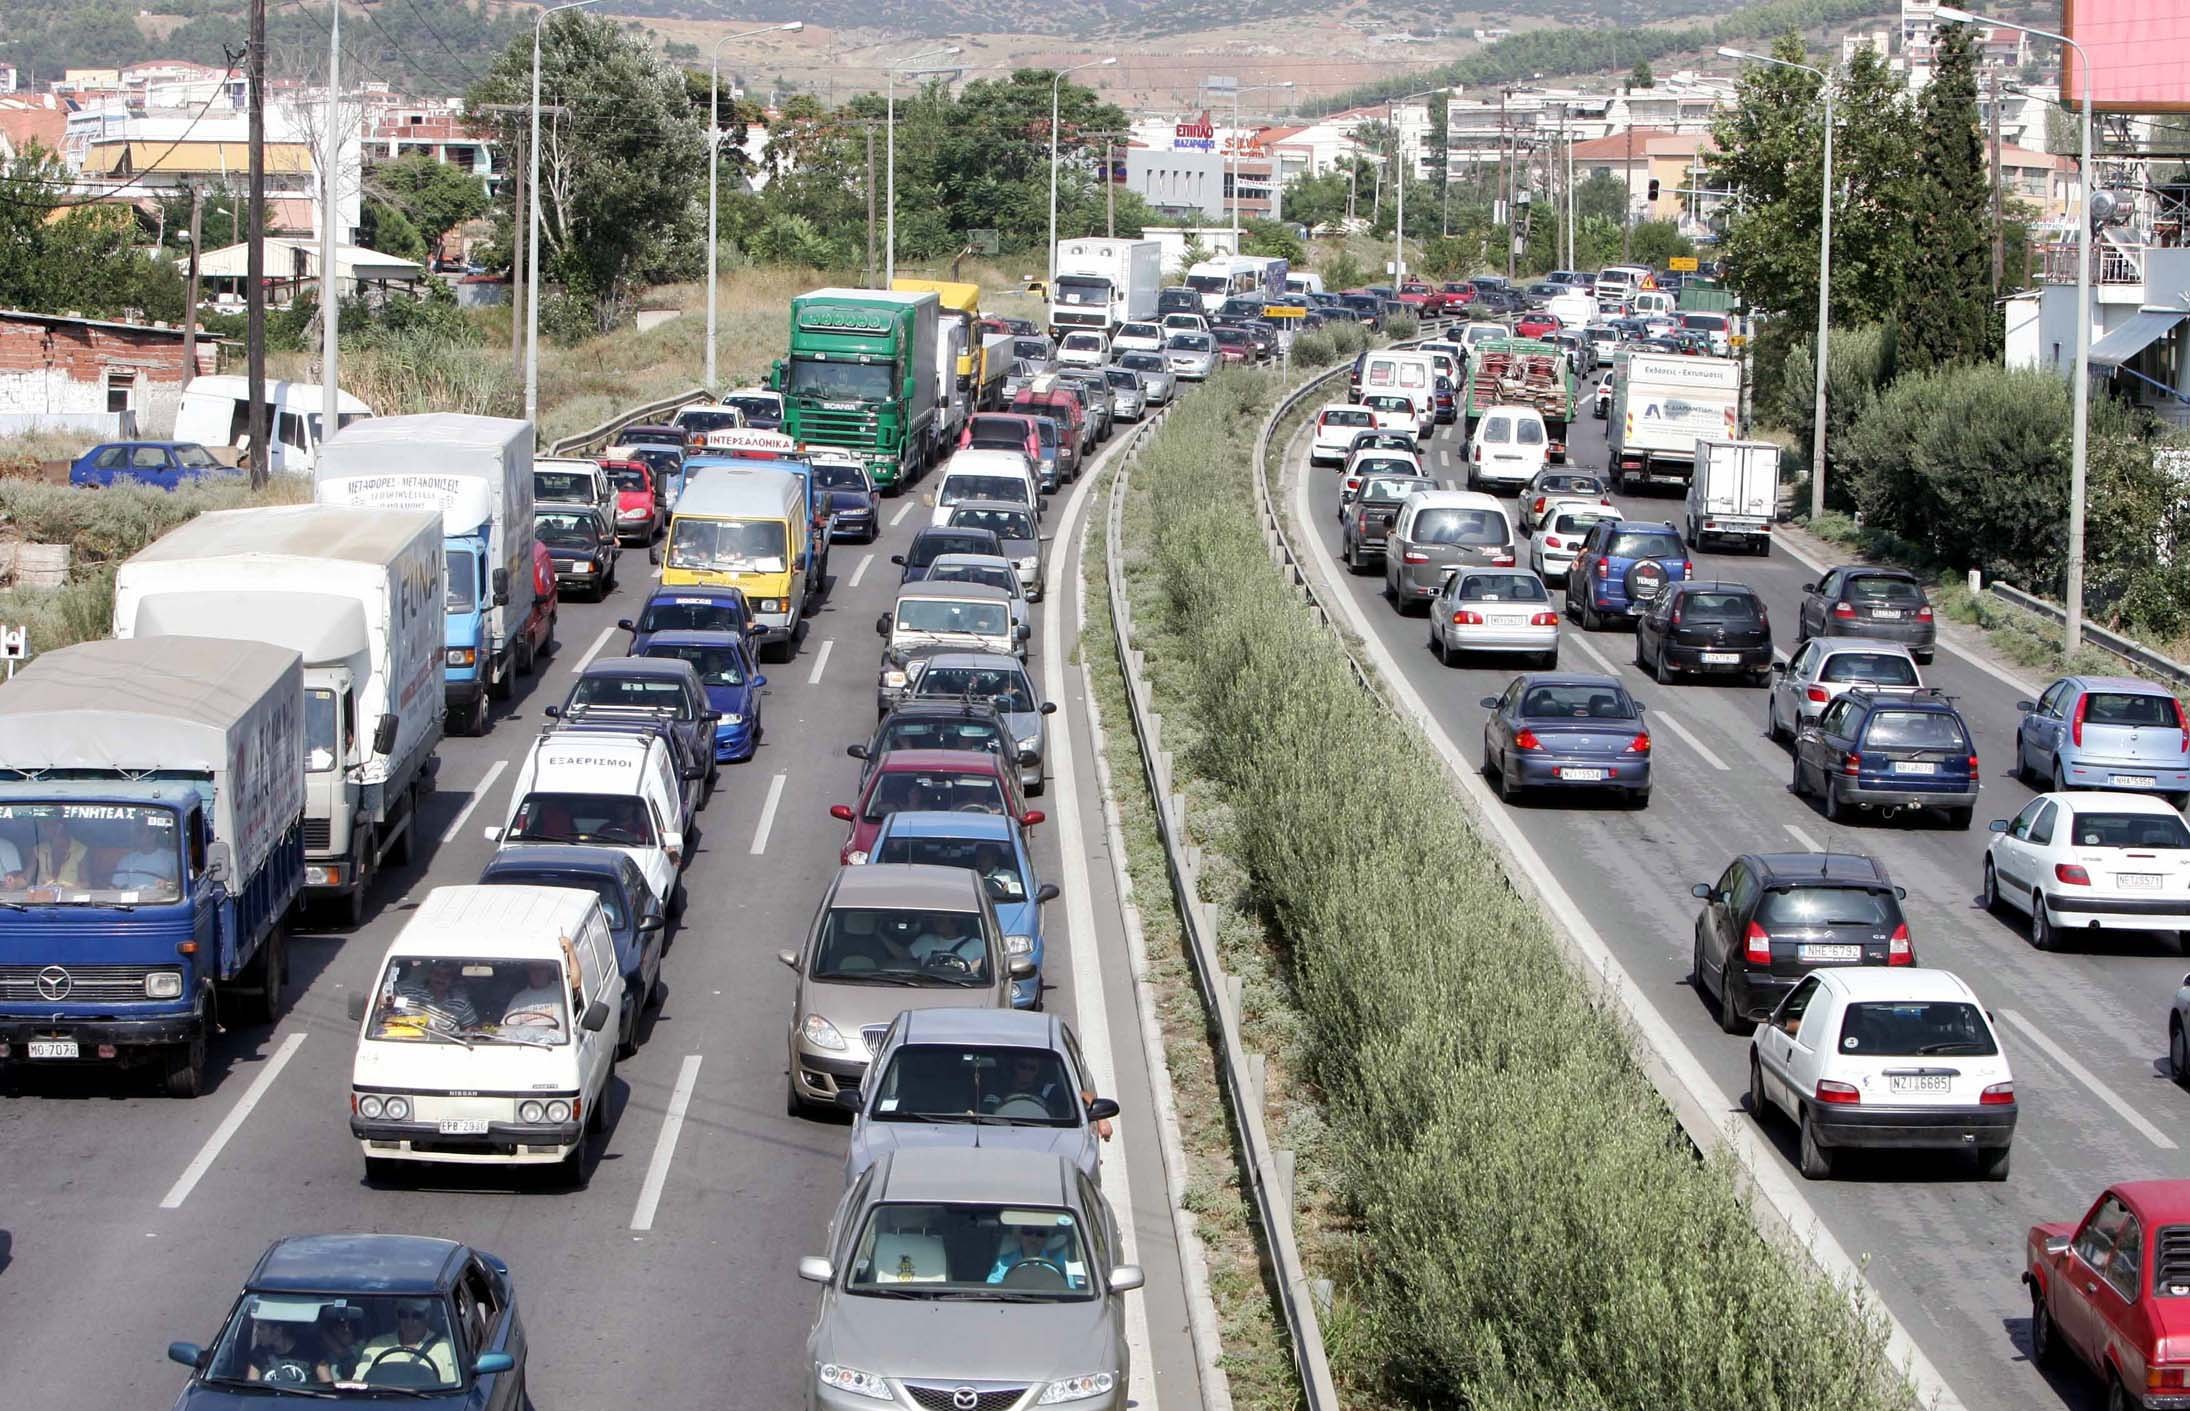 Η βροχή δημιούργησε προβλήματα στην κυκλοφορία των οχημάτων σε όλη τη Θεσσαλονίκη